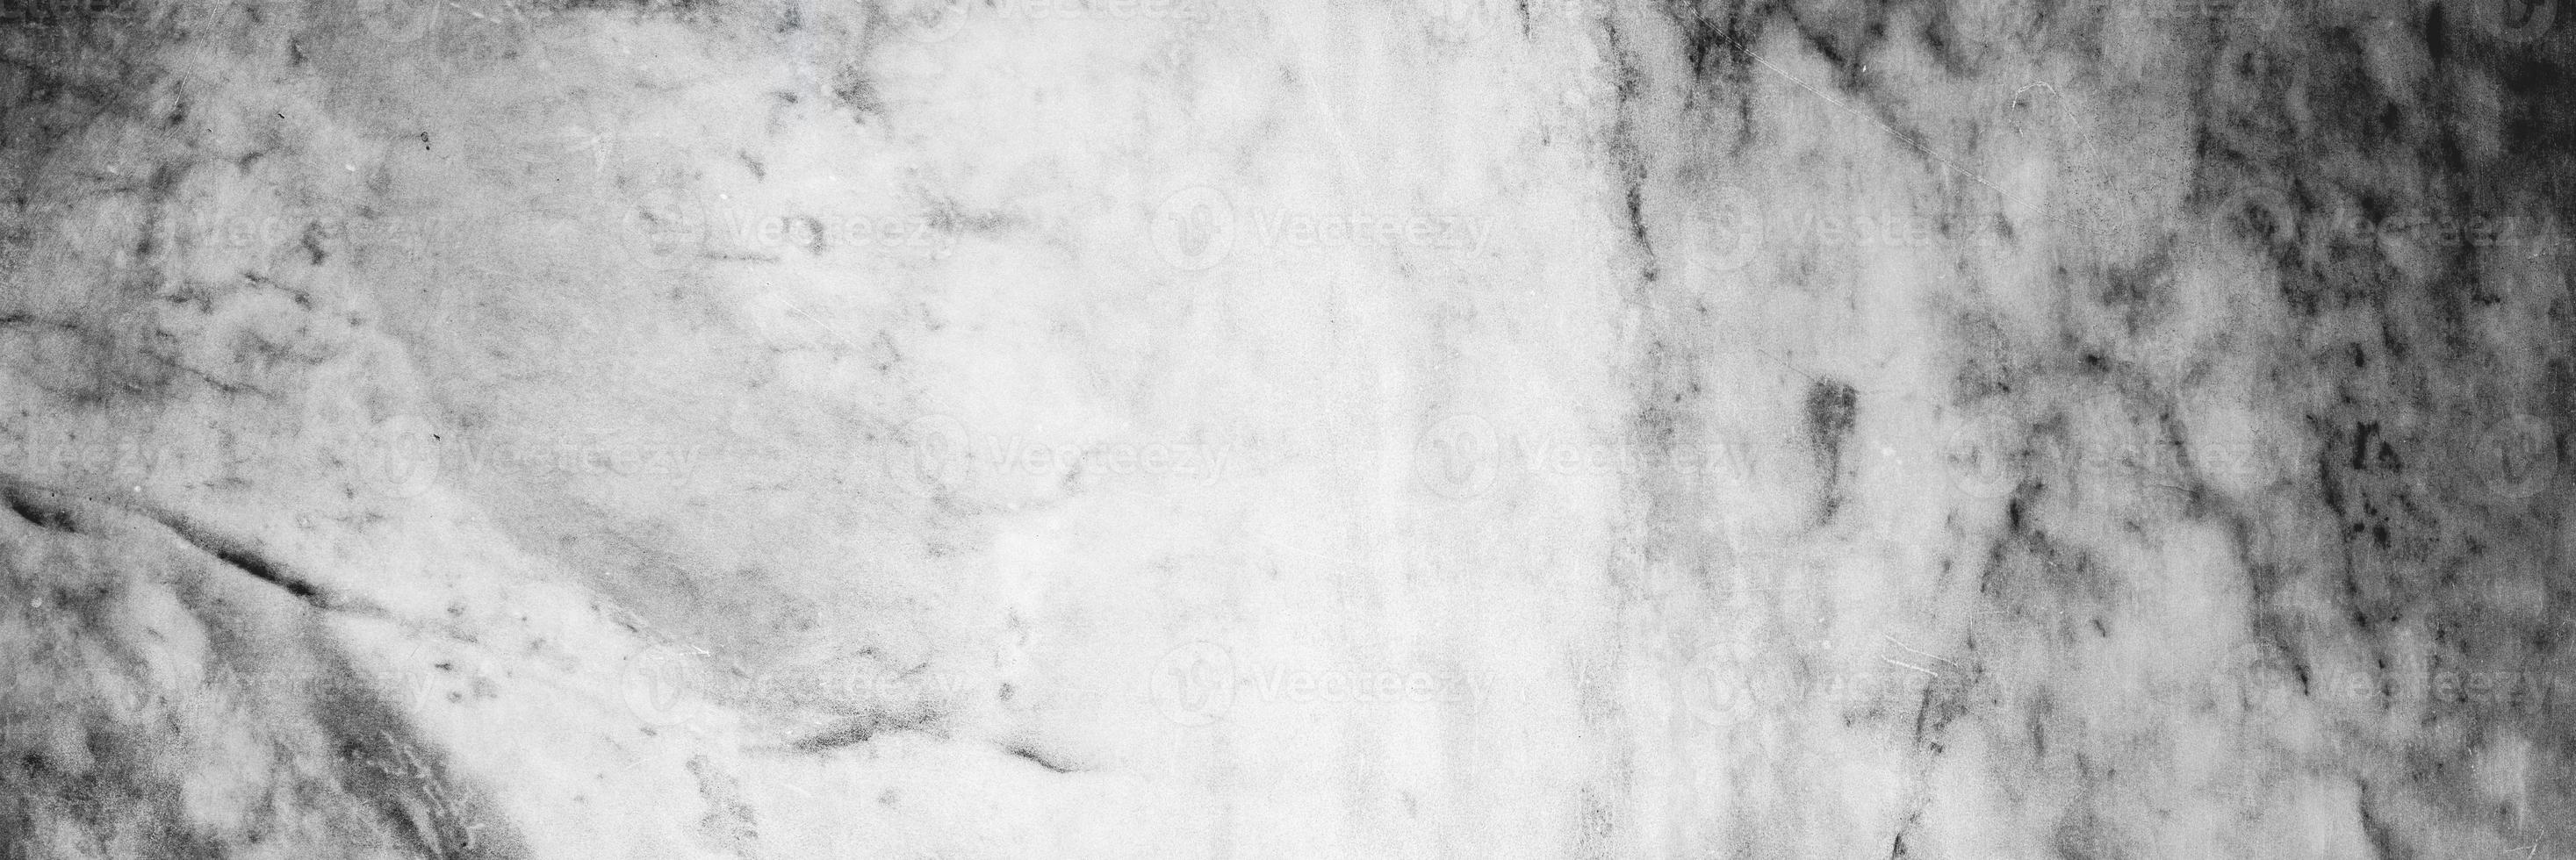 marbre blanc et gris pour le fond ou la texture photo